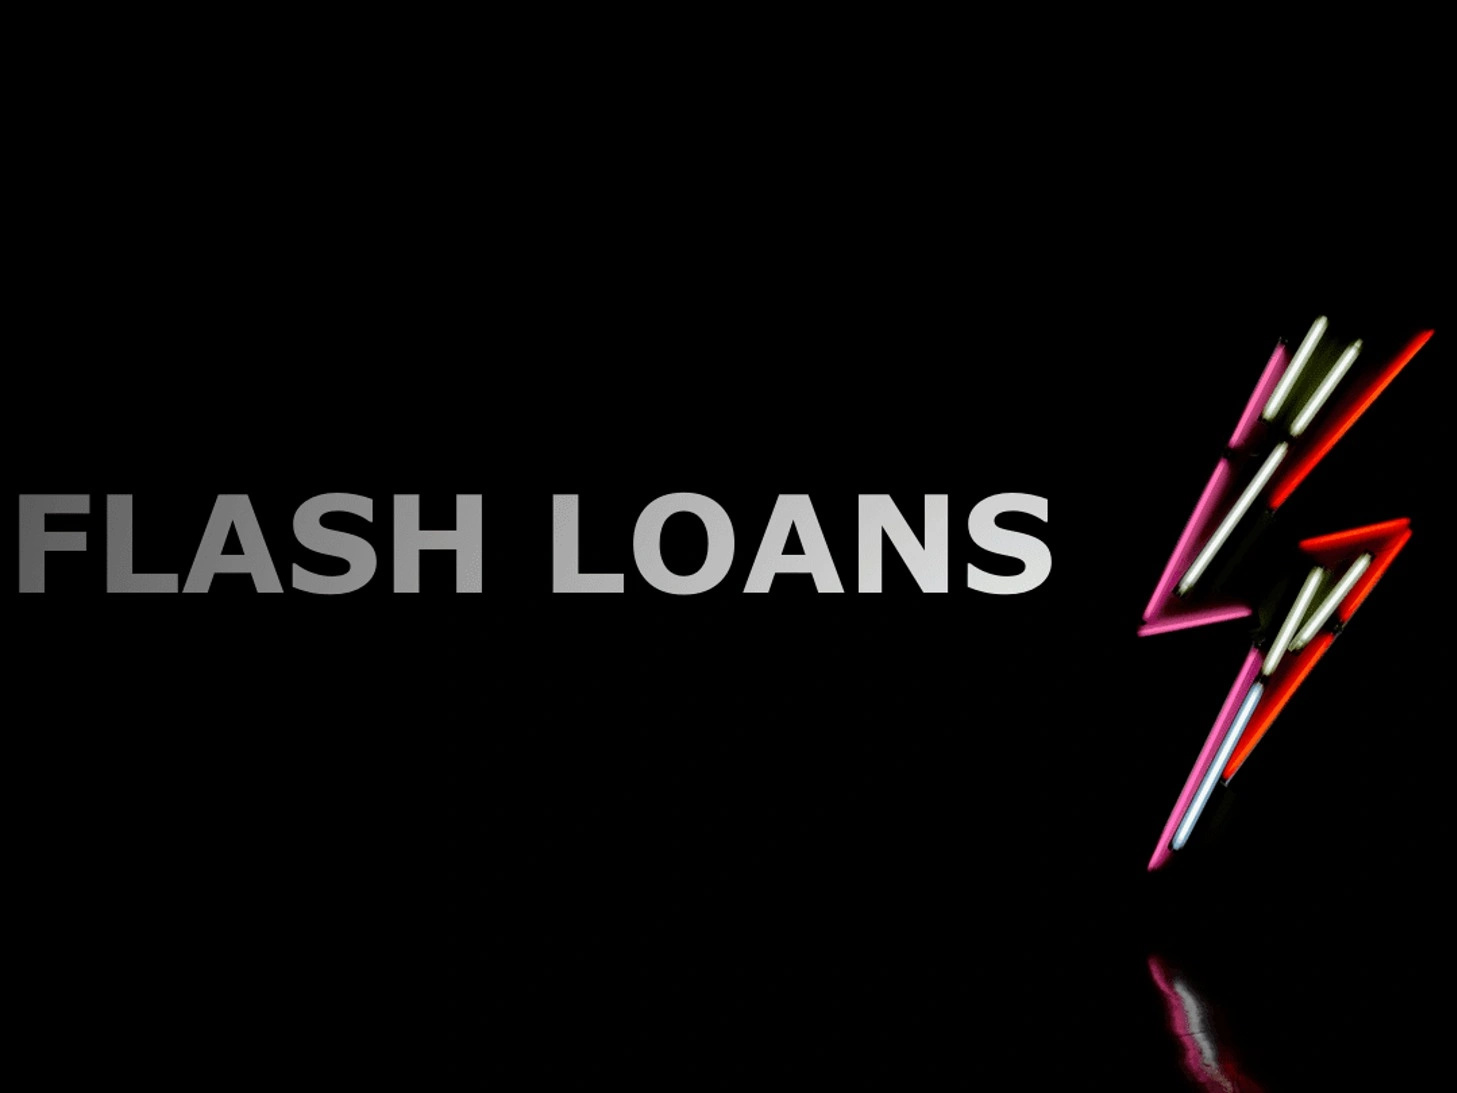 Flash Loan